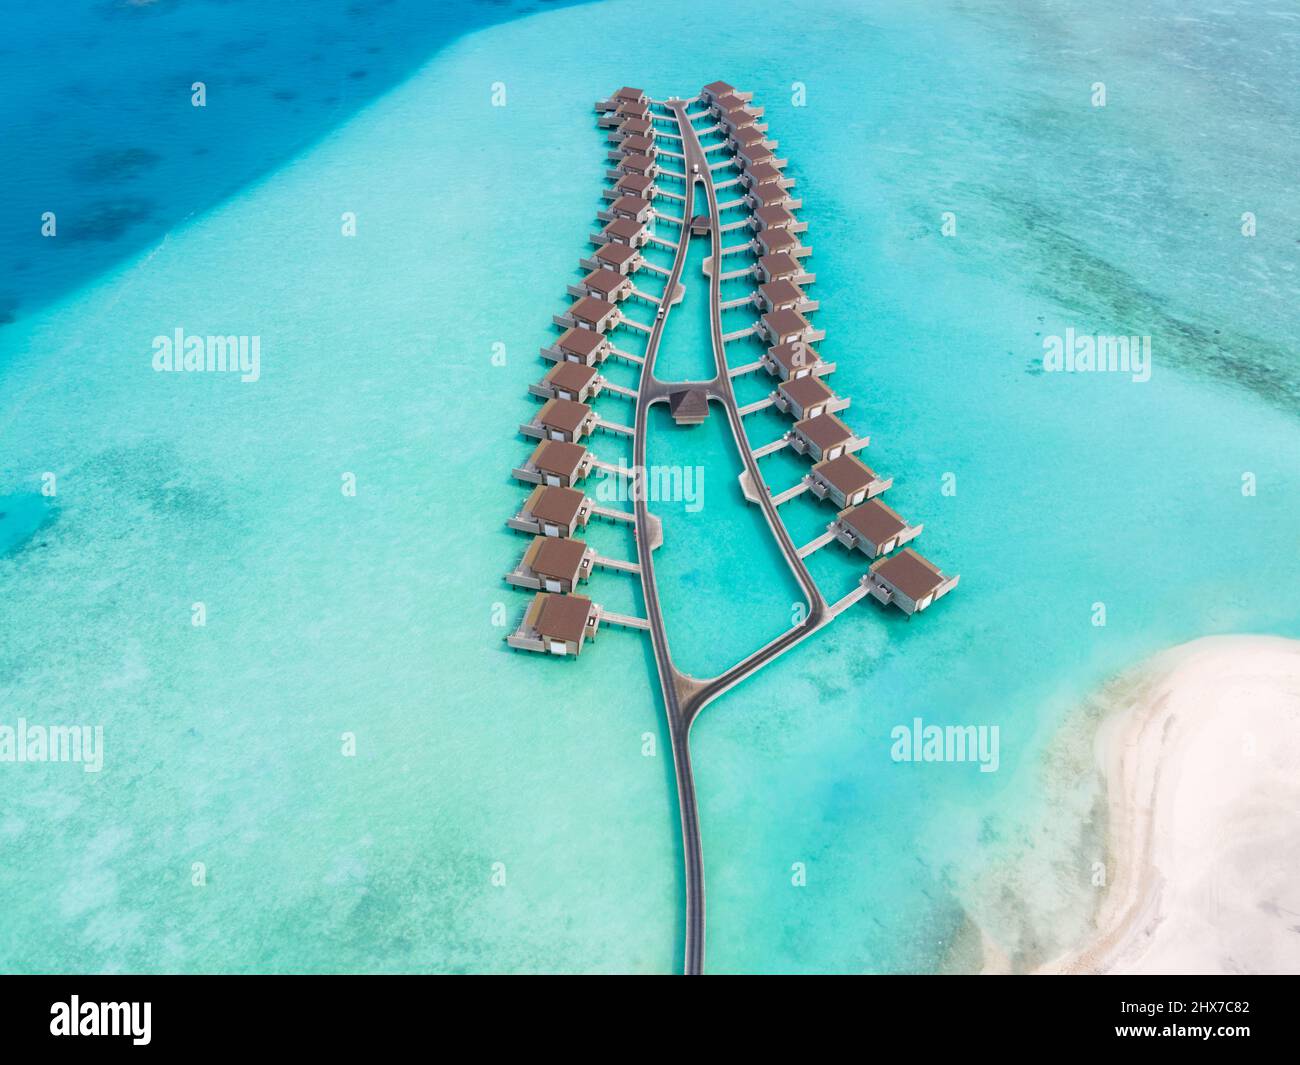 Chalets sobre el agua y playa de arena blanca en la isla de atolón tropical para vacaciones viajes de vacaciones y luna de miel. Hotel resort de lujo en Maldivas o Caribea Foto de stock